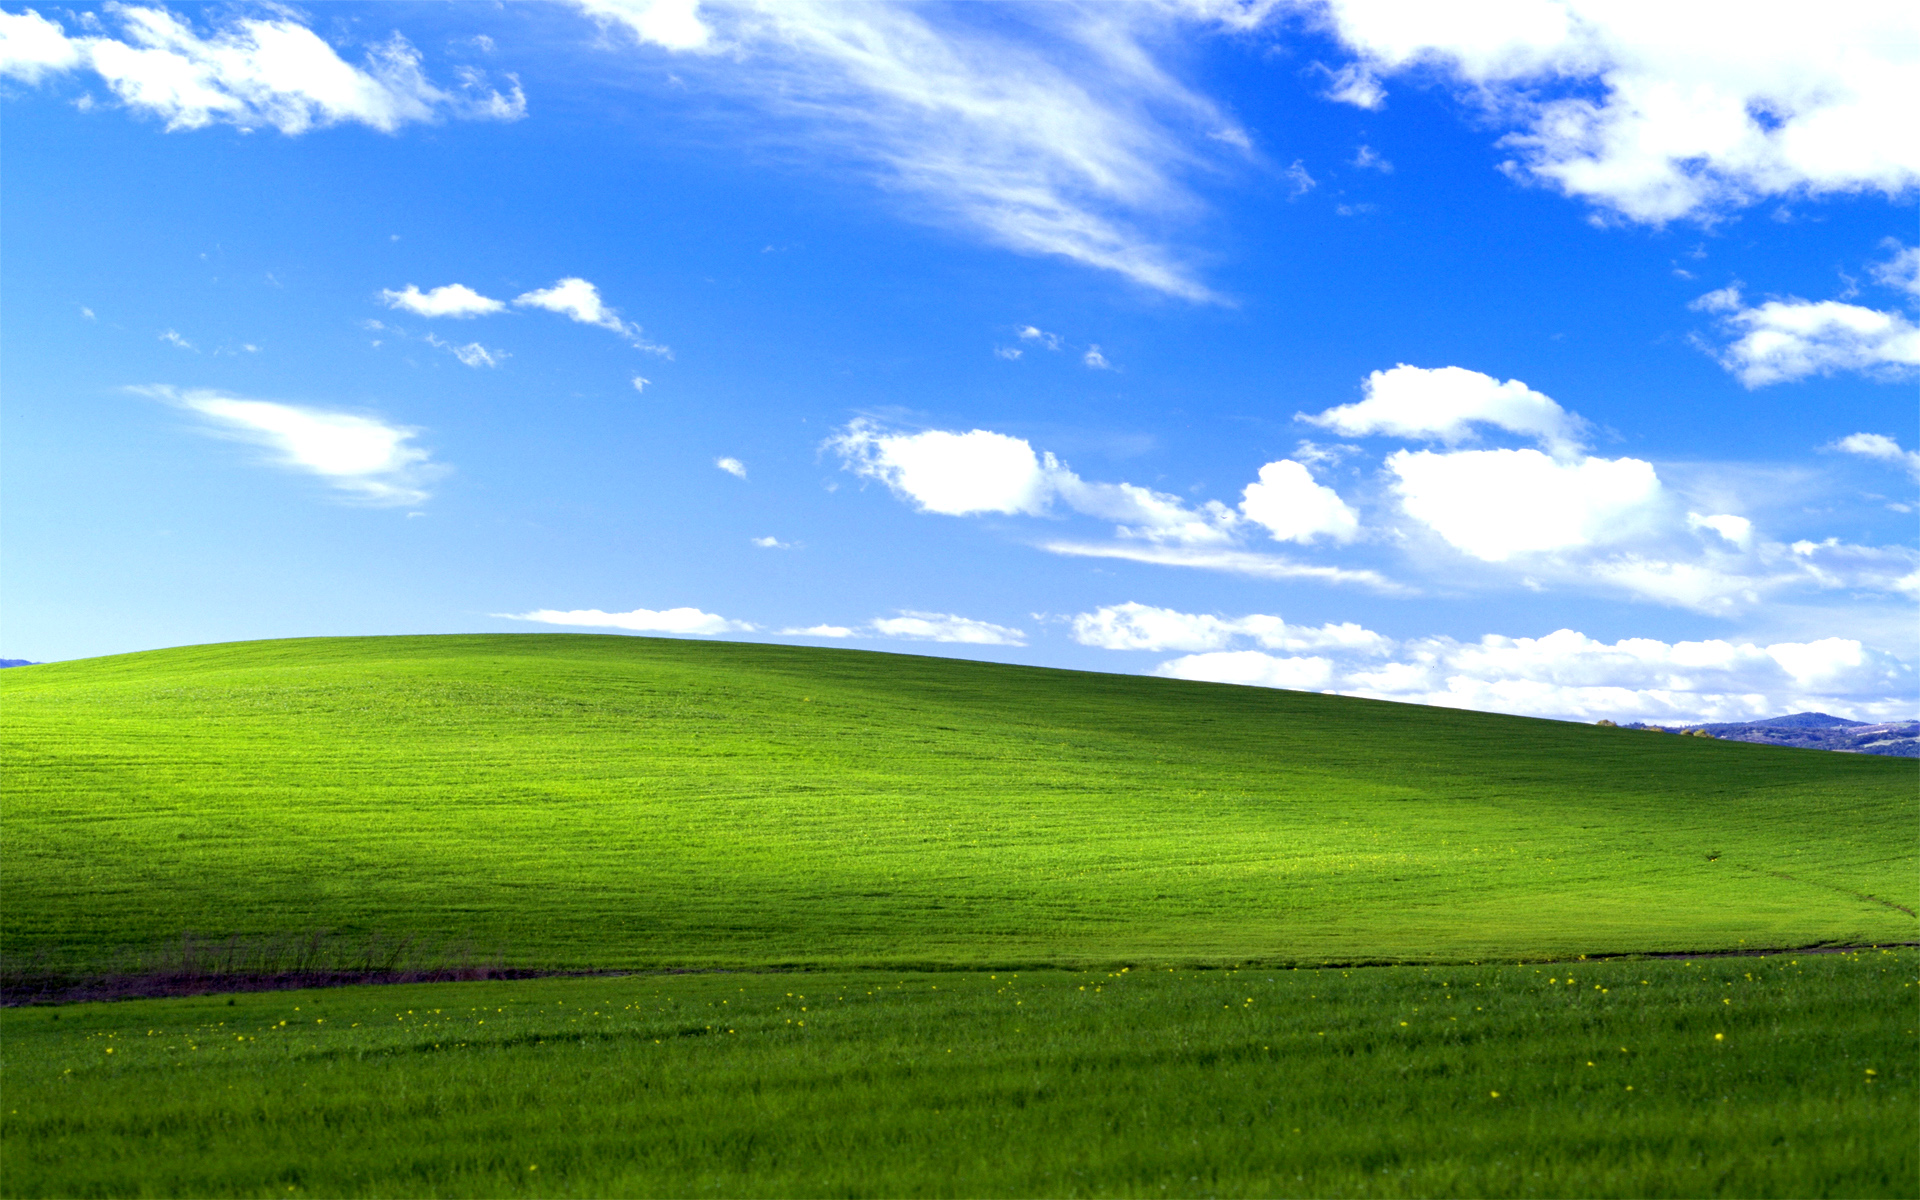 Bạn đang muốn tìm một ứng dụng hình nền Windows XP hoàn hảo? Với 76+ hình nền desktop Windows XP đa dạng và đẹp mắt từ WallpaperSafari, bạn chắc chắn sẽ tìm được bức hình ưng ý cho màn hình desktop của mình.